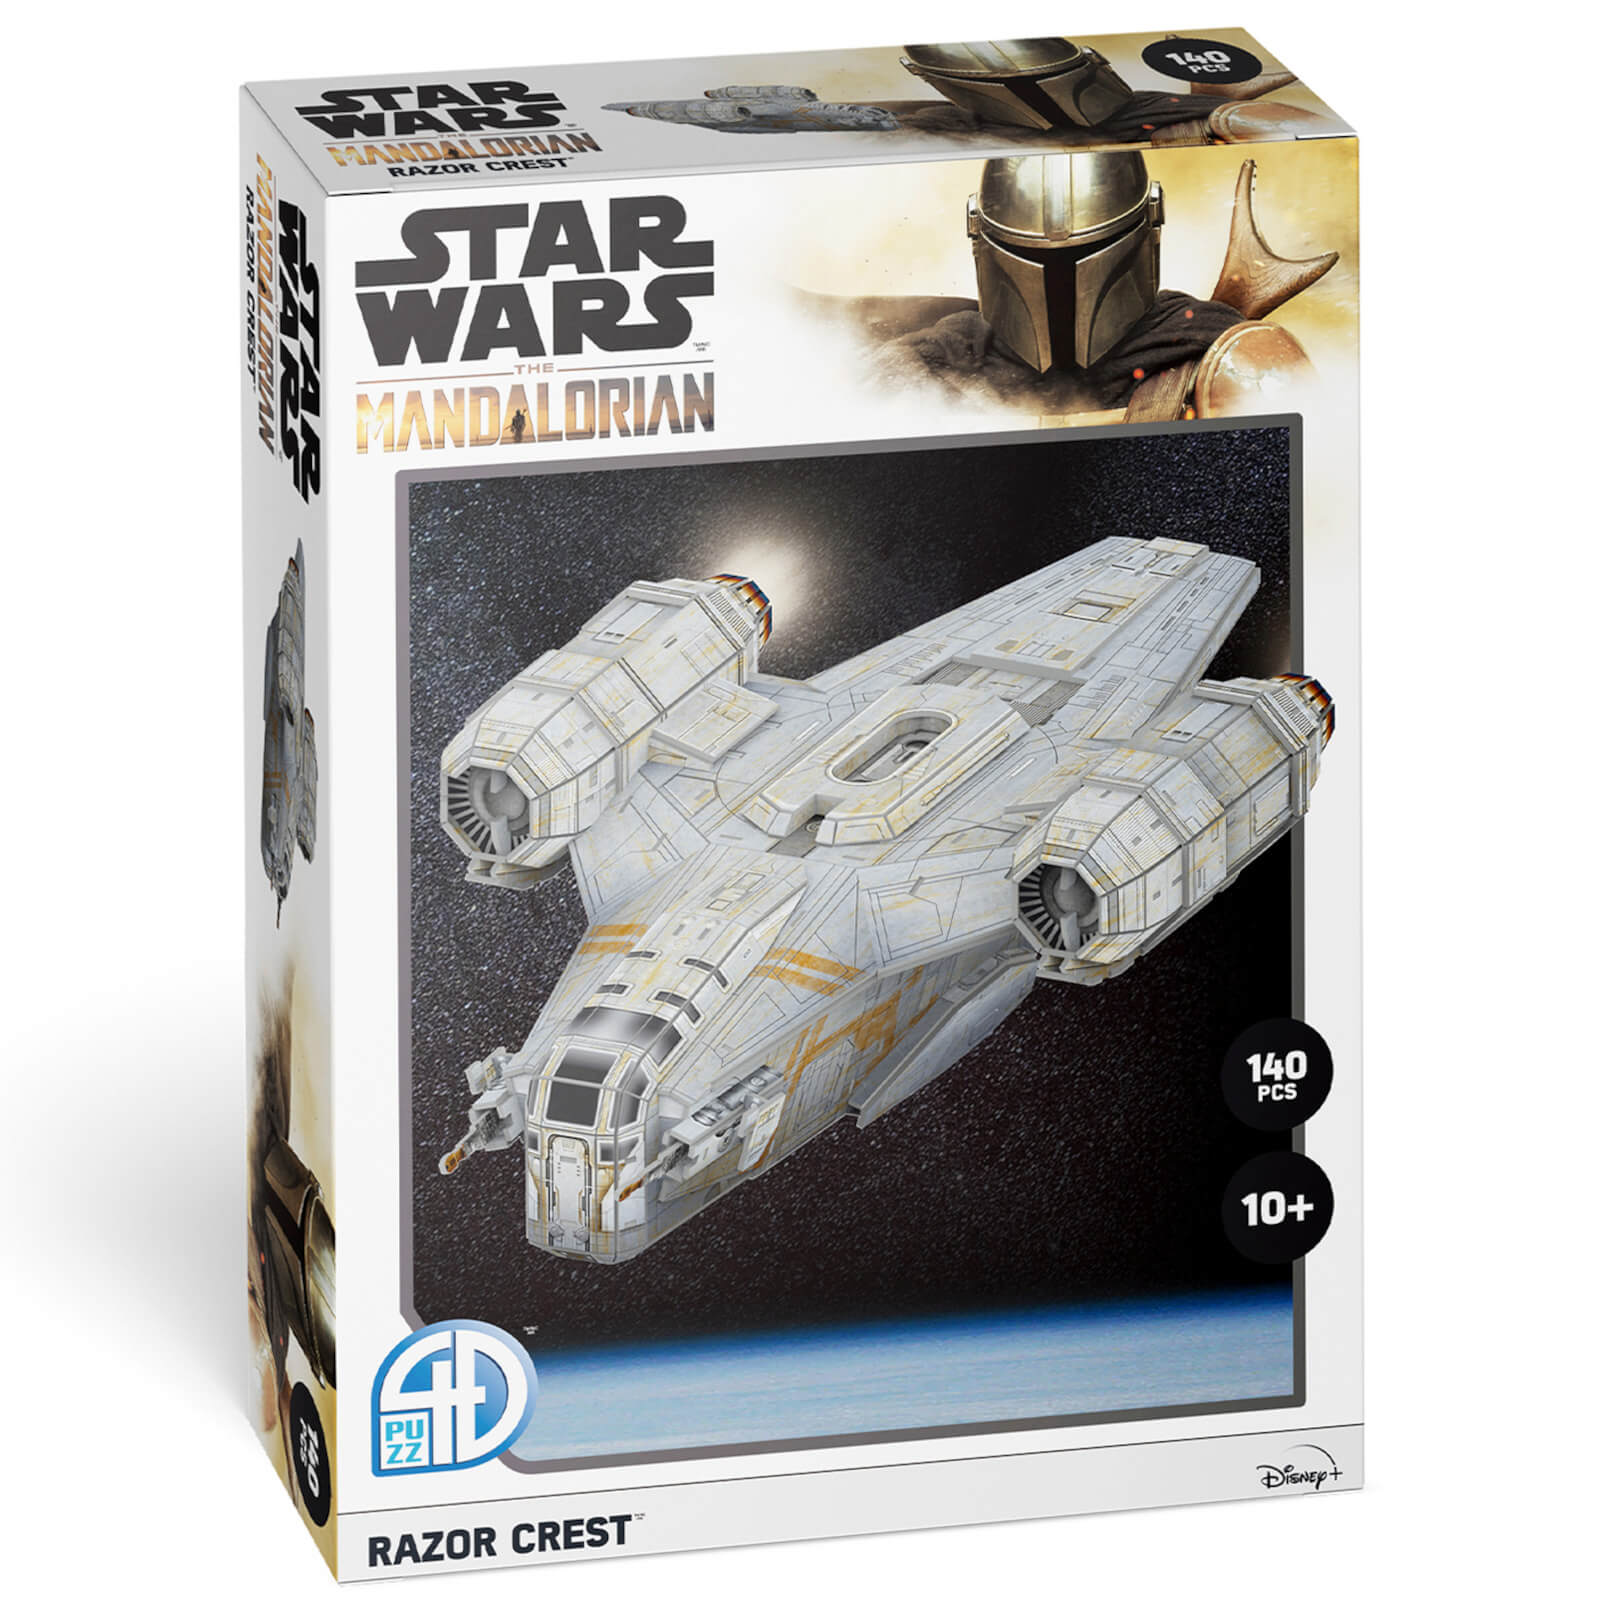 Star Wars: The Mandalorian Razor Crest Paper Core 3D Puzzle Model von 4D Puzzle